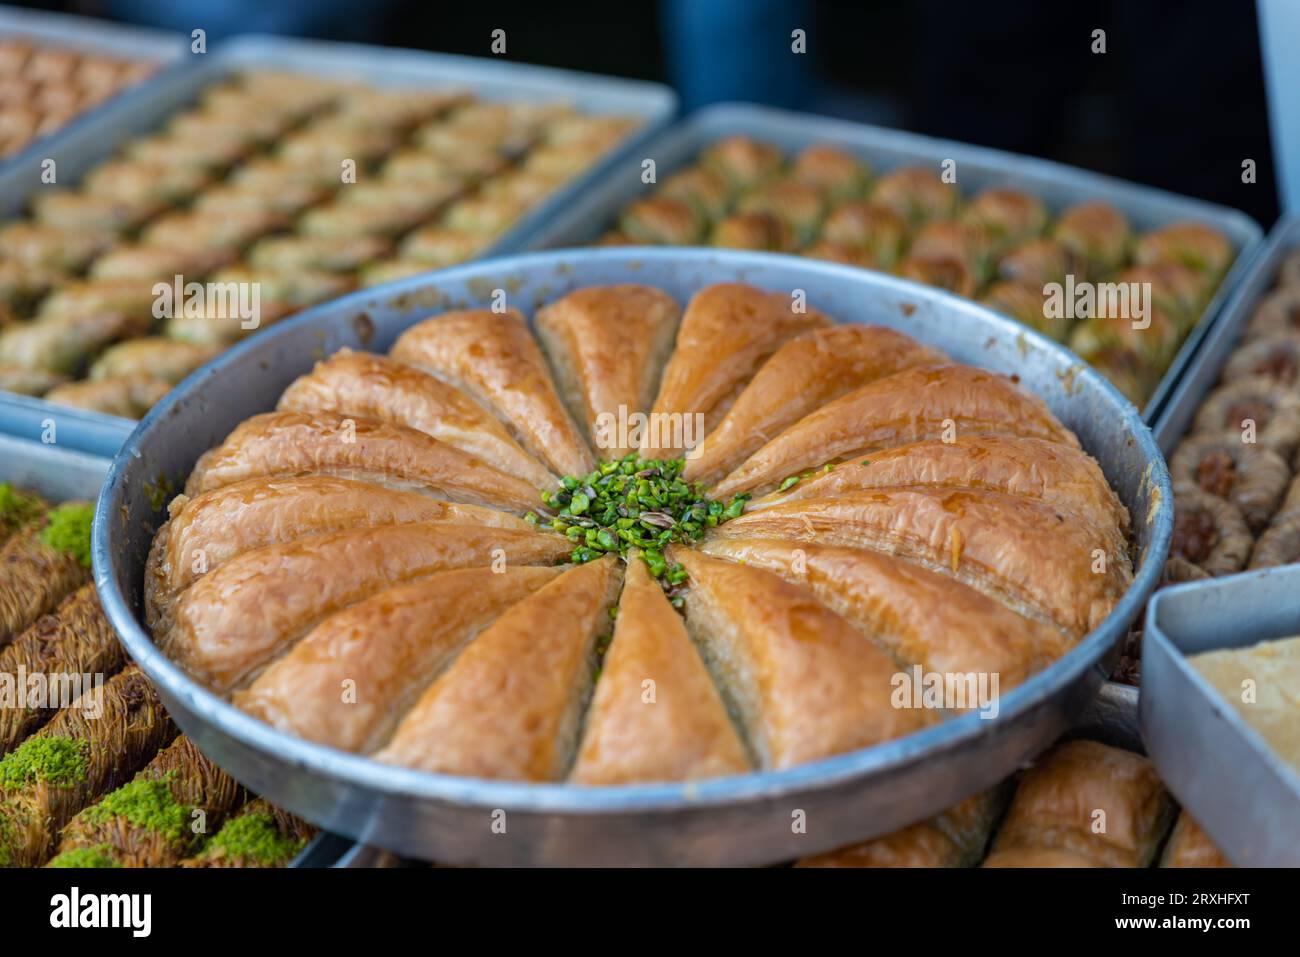 Baklava à la pistache. Saveurs traditionnelles du Moyen-Orient. Le nom local de Baklava est Fistikli Baklava. Baklava turc traditionnel et délicieux. Haute qua Banque D'Images